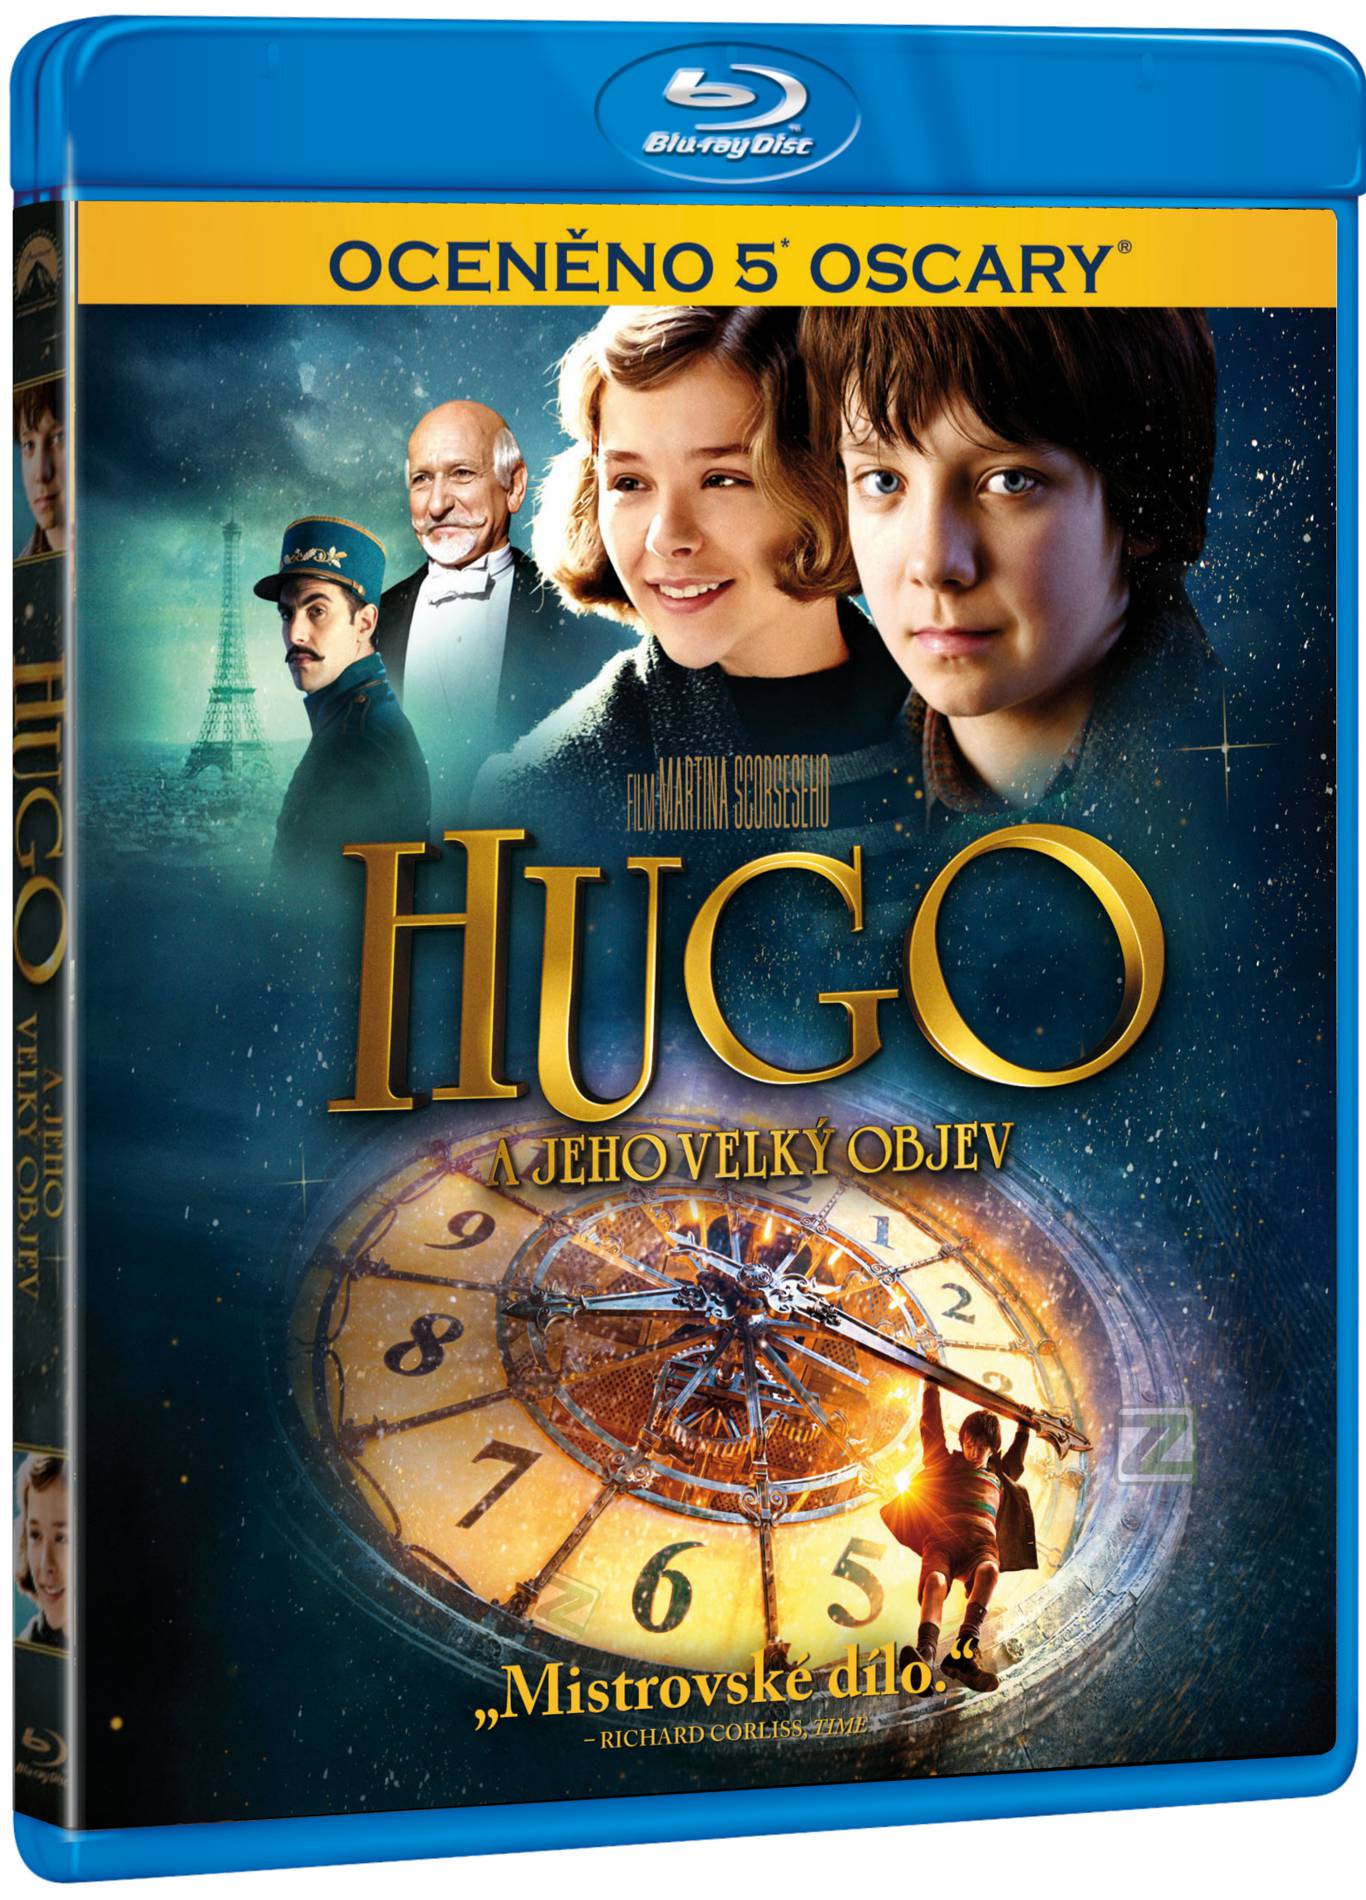 Hugo a jeho velký objev - Blu-ray